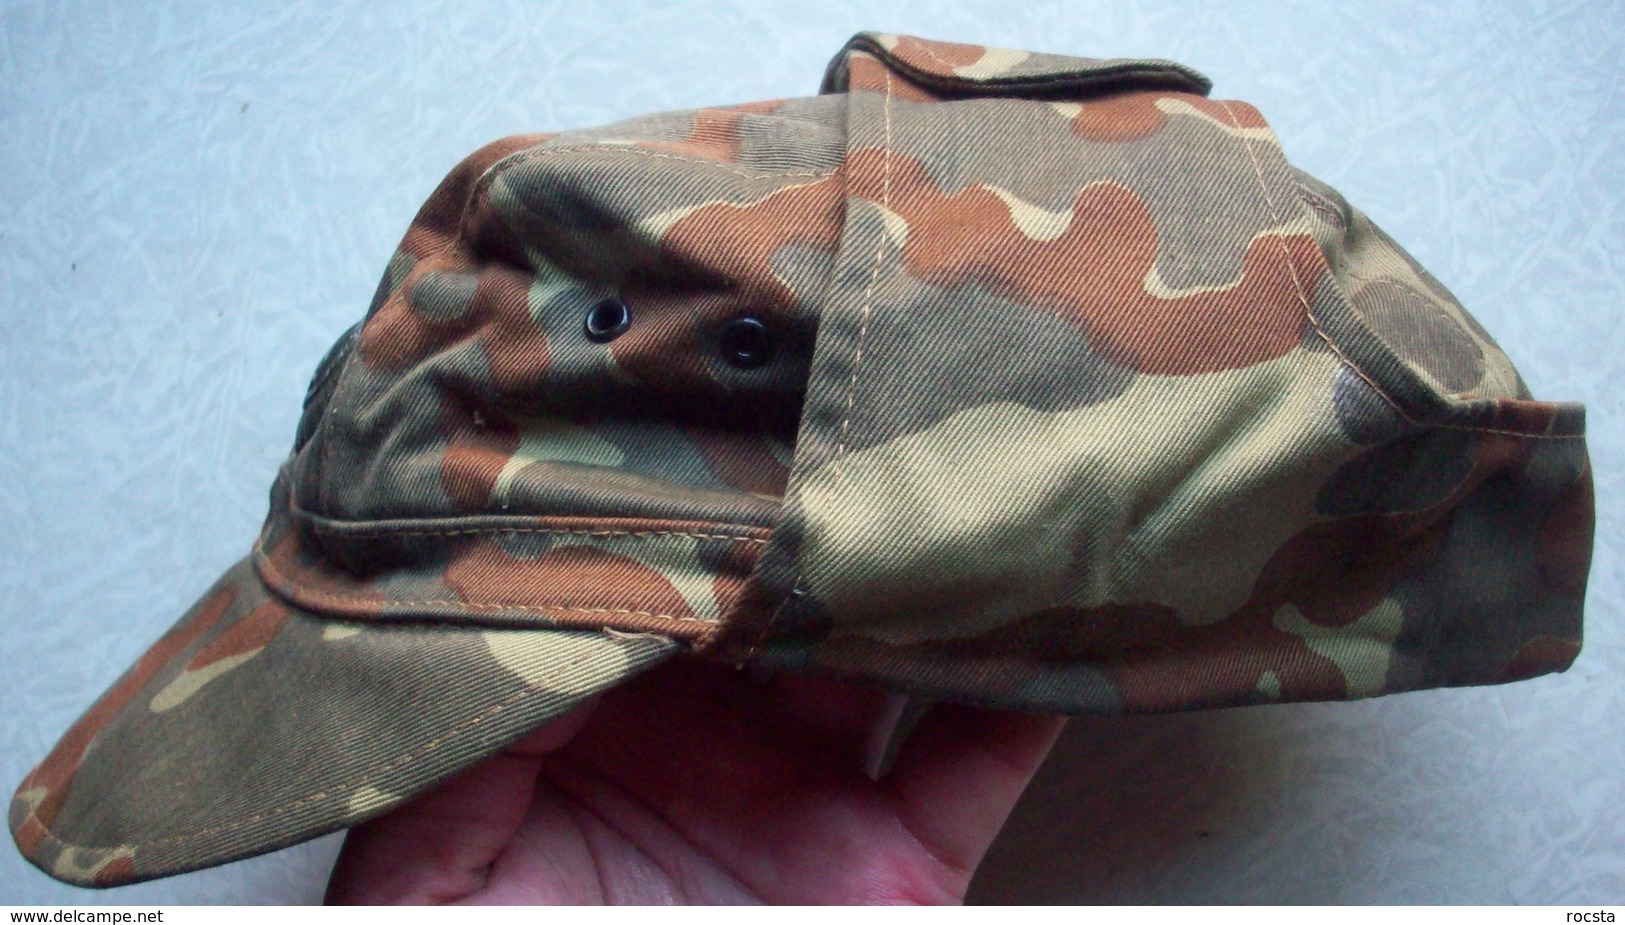 Ukrainian Army Ensign Camouflage Uniform Set (cap, Jacket, Pants) ATO - Size 46 - Uniformes